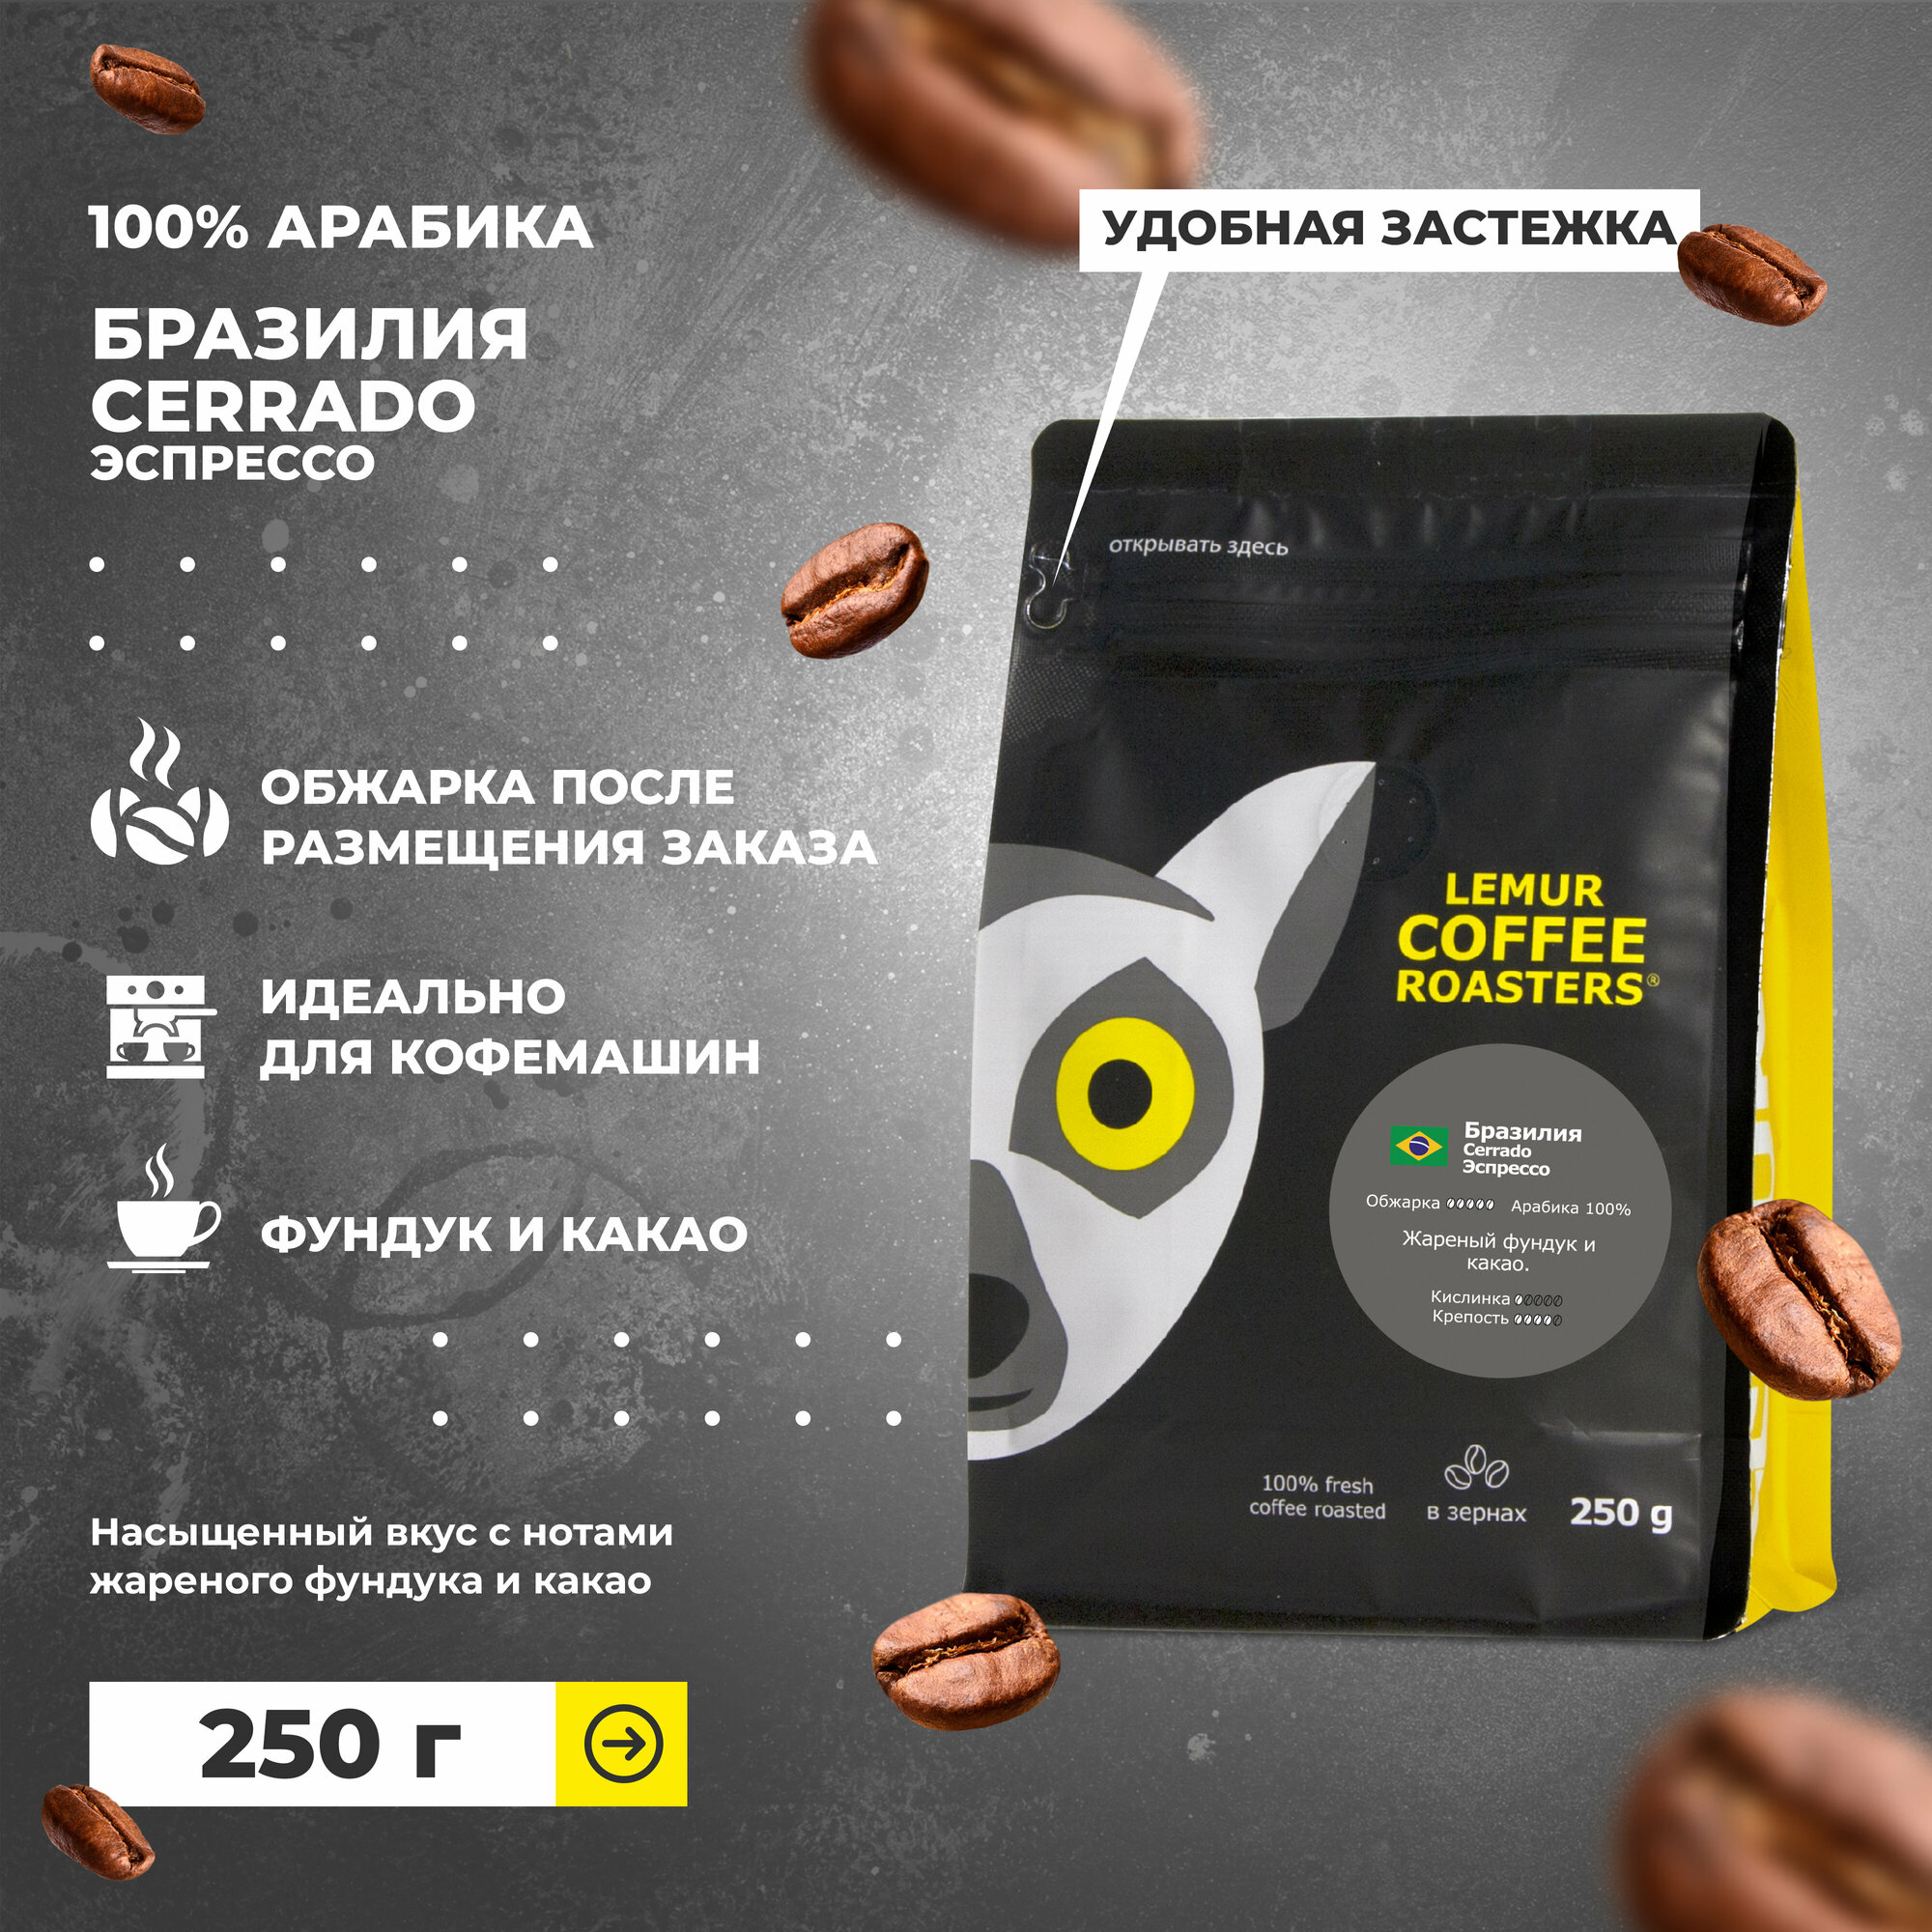 Свежеобжаренный кофе в зернах Бразилия Cerrado Эспрессо Lemur Coffee Roasters, 250 г